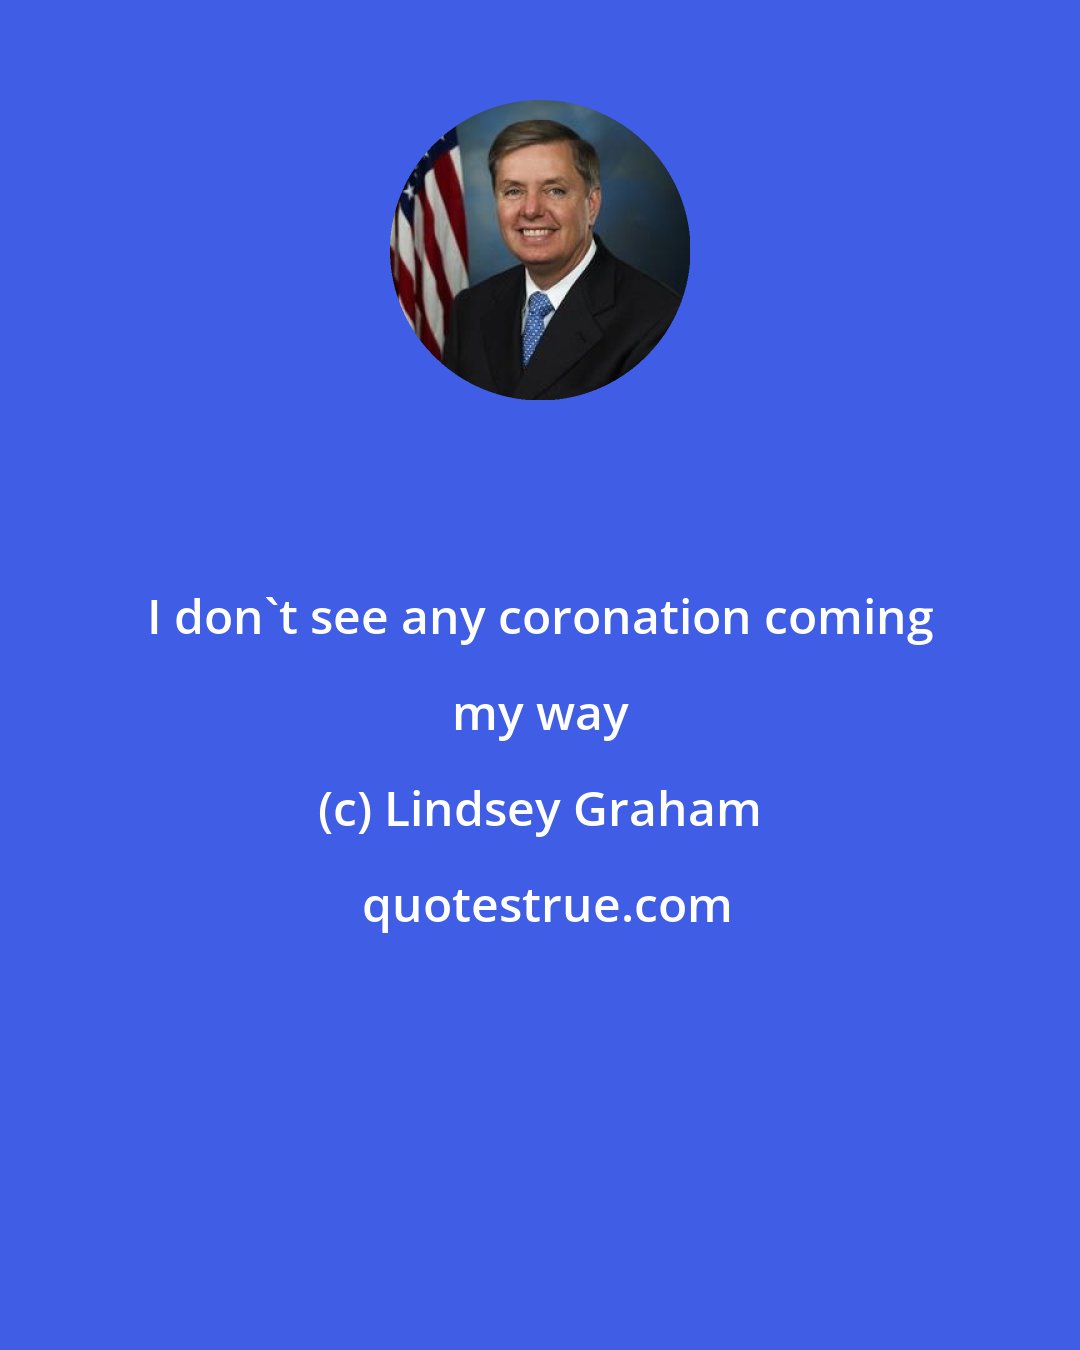 Lindsey Graham: I don't see any coronation coming my way